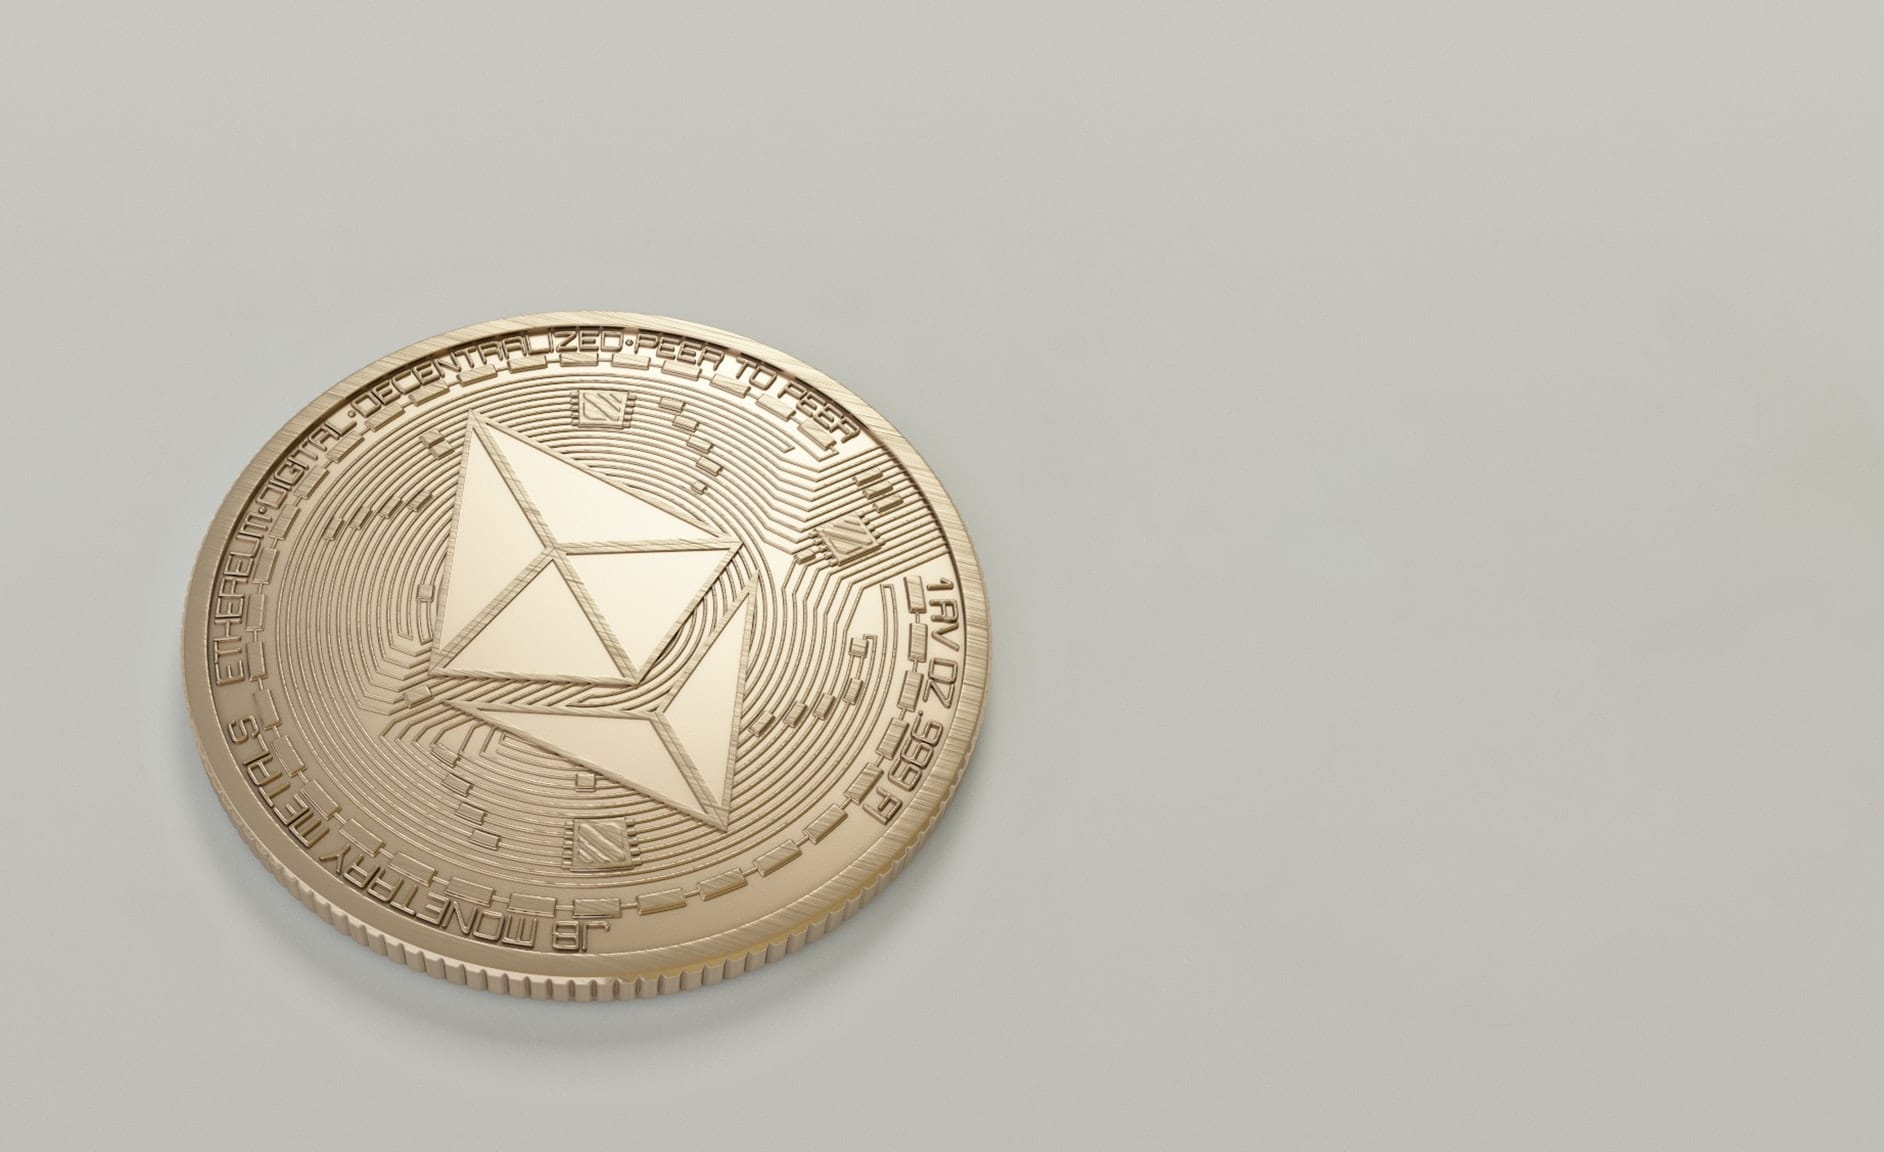 Ethereum-Aktie: So profitieren Sie von den Chancen der Kryptowährung